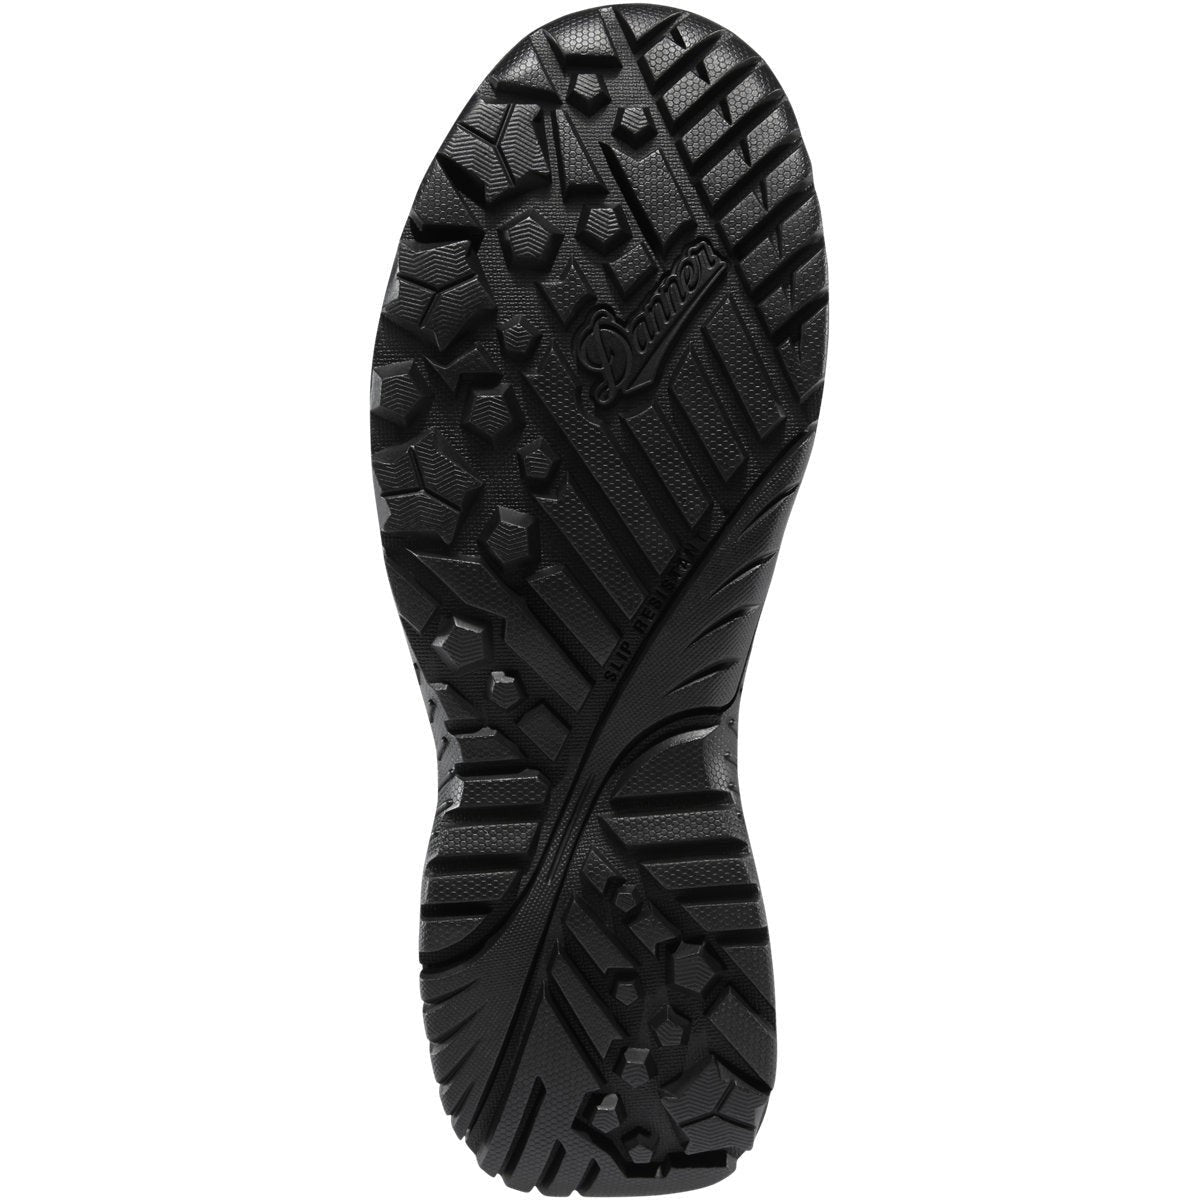 Danner Men's Scorch 8" Side Zip Duty Boot -Black- 25732  - Overlook Boots